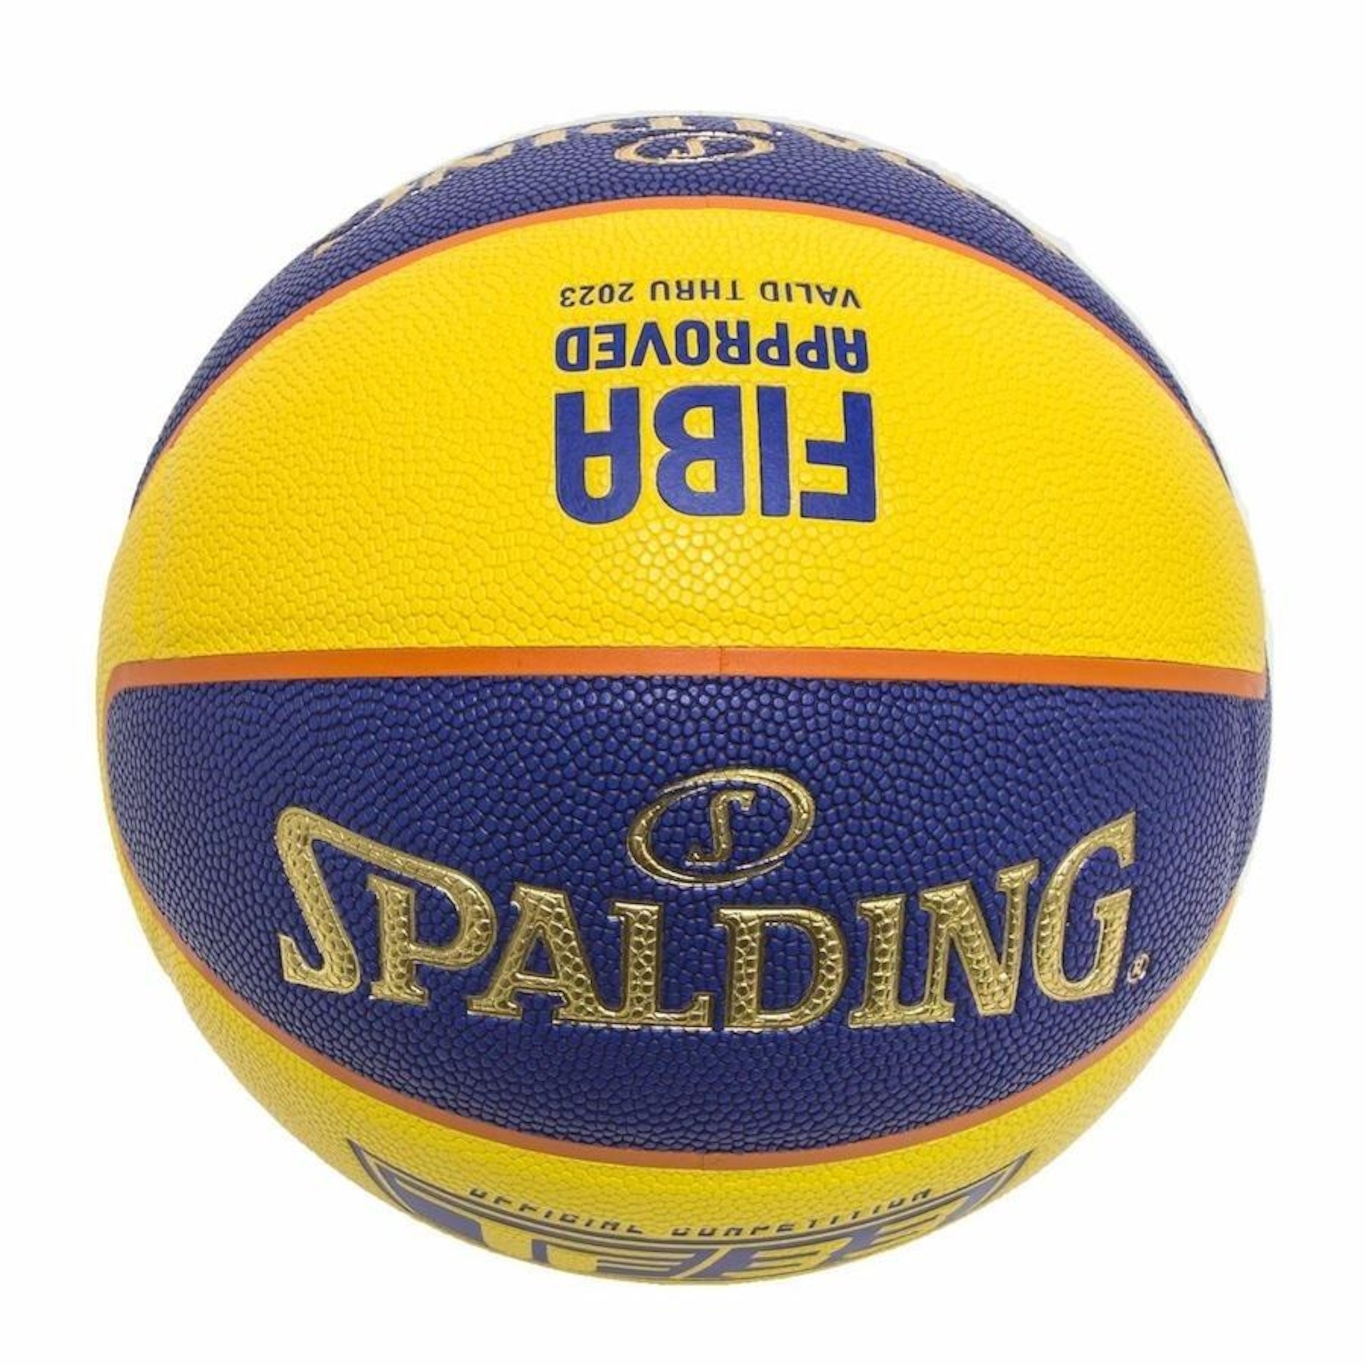 Bola de Basquete Spalding 3X3 TF-33 FIBA Microfibra #6